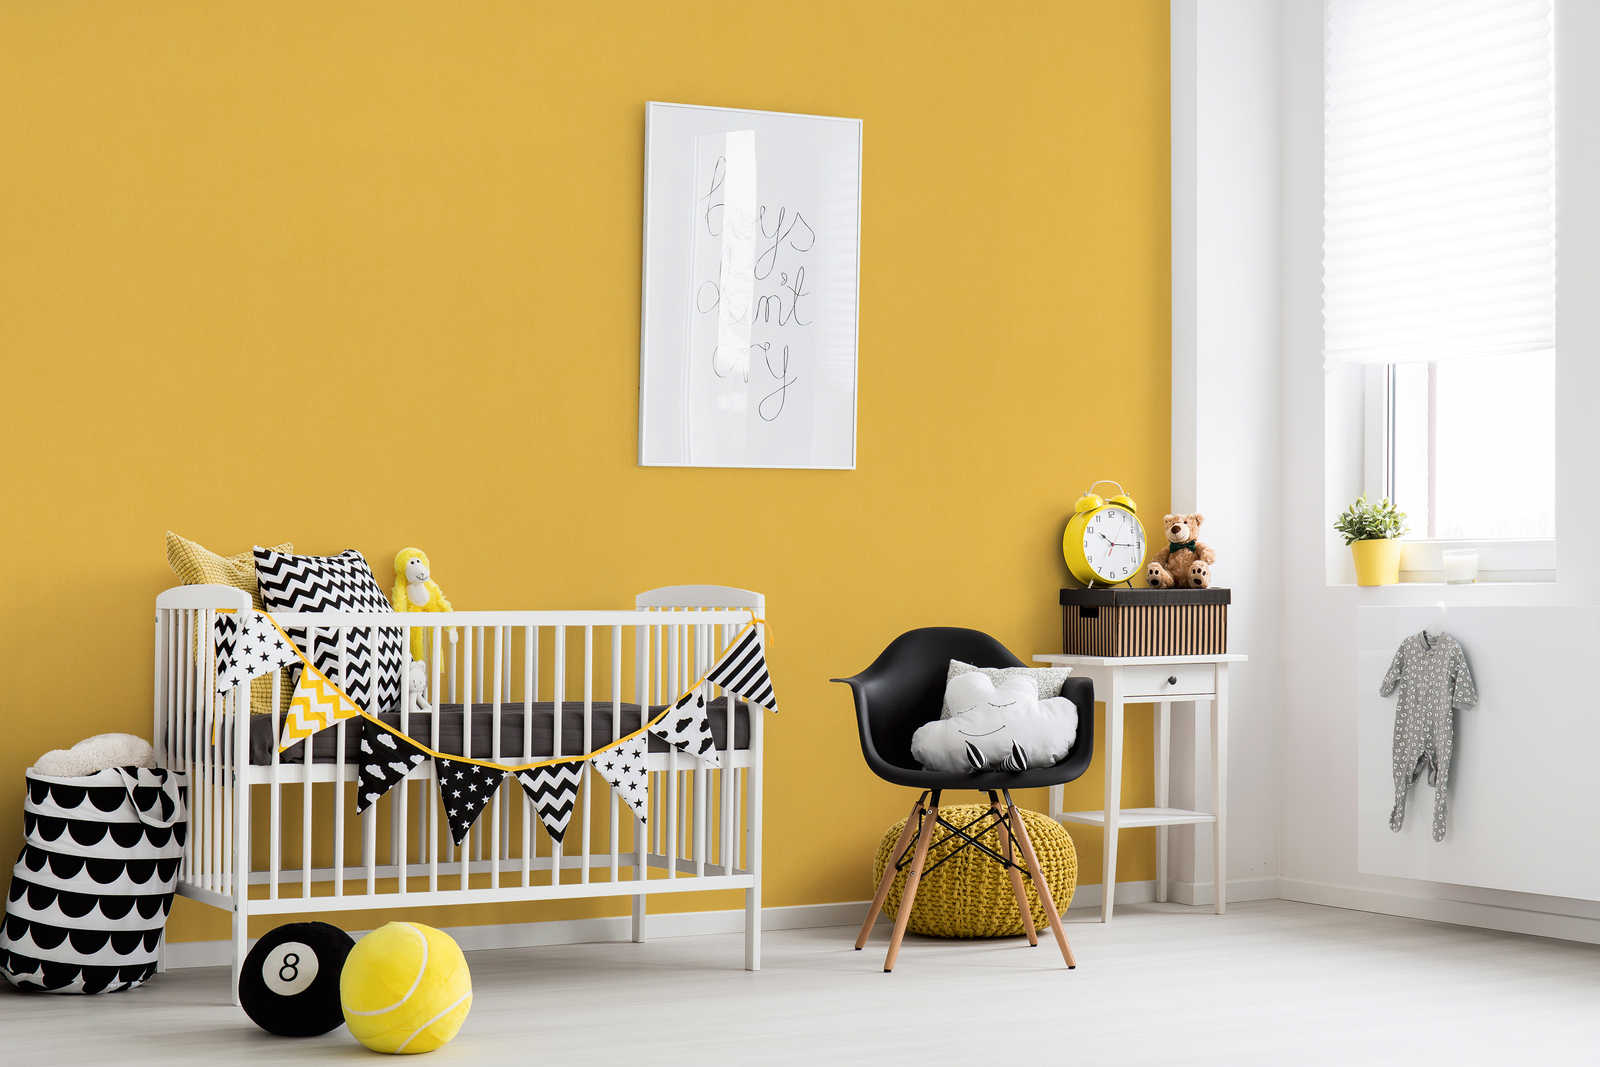             Papier peint jaune moutarde chambre enfant uni - Jaune
        